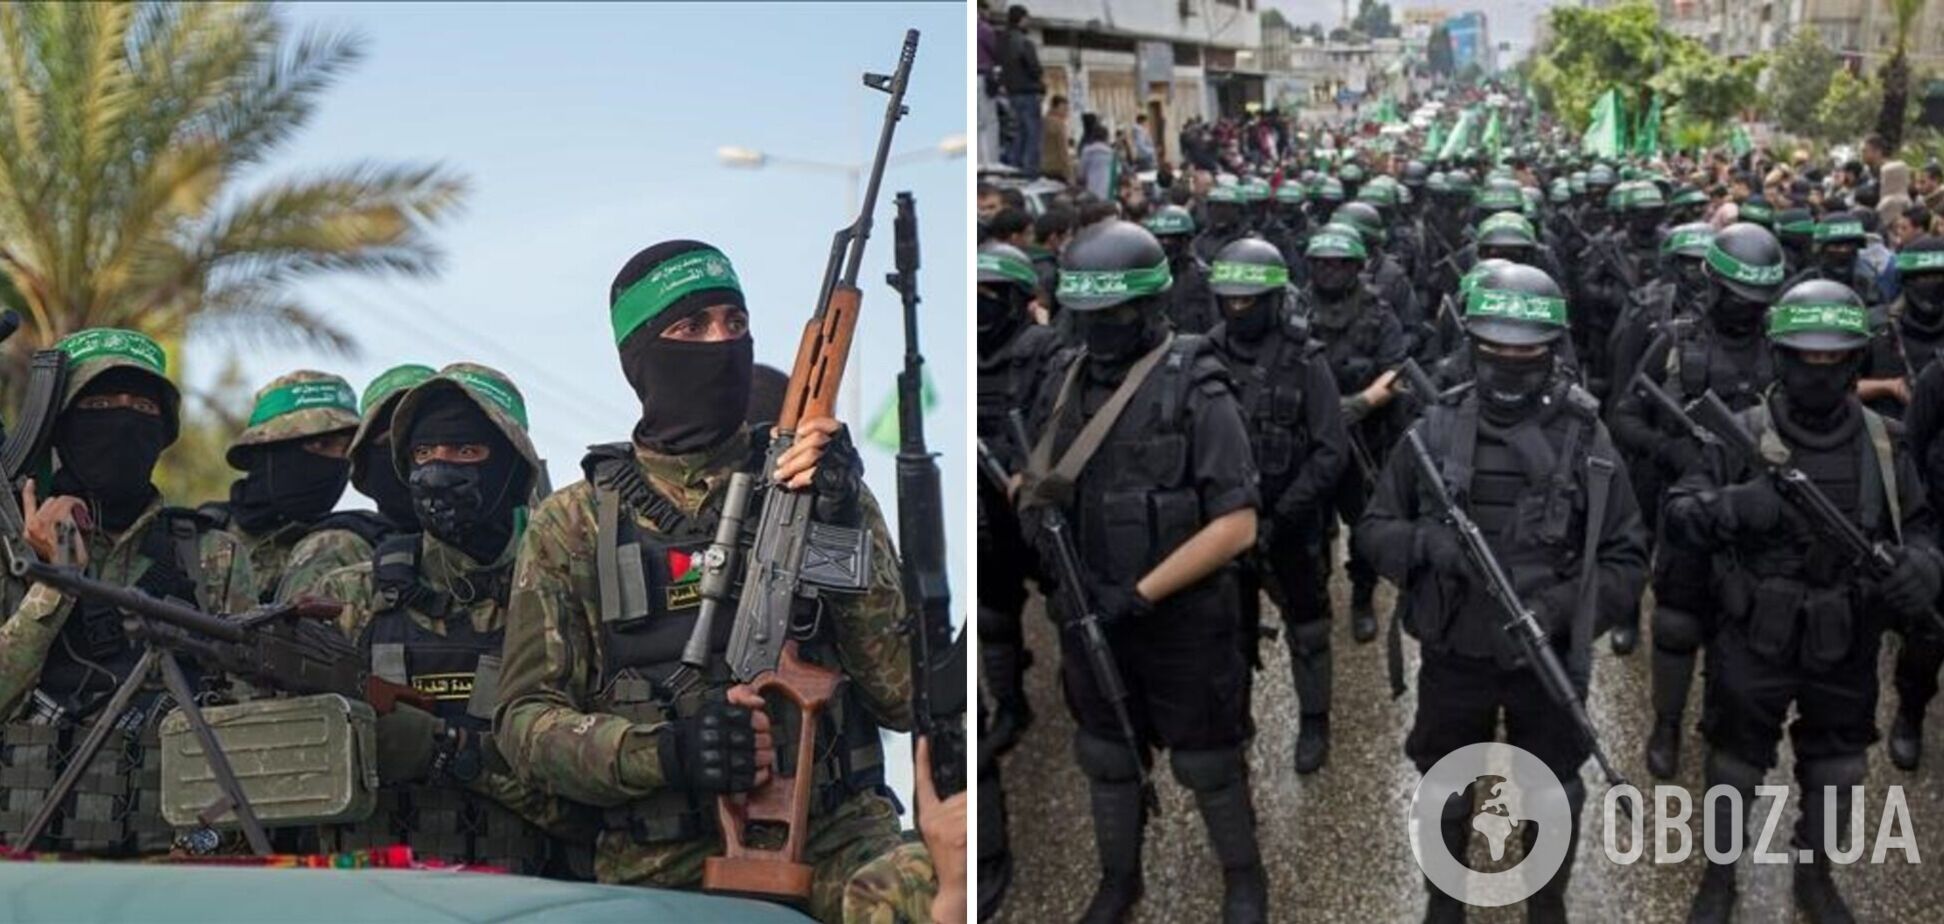 ХАМАС получает до $12 млн в месяц от якобы благотворительных организаций – Bloomberg